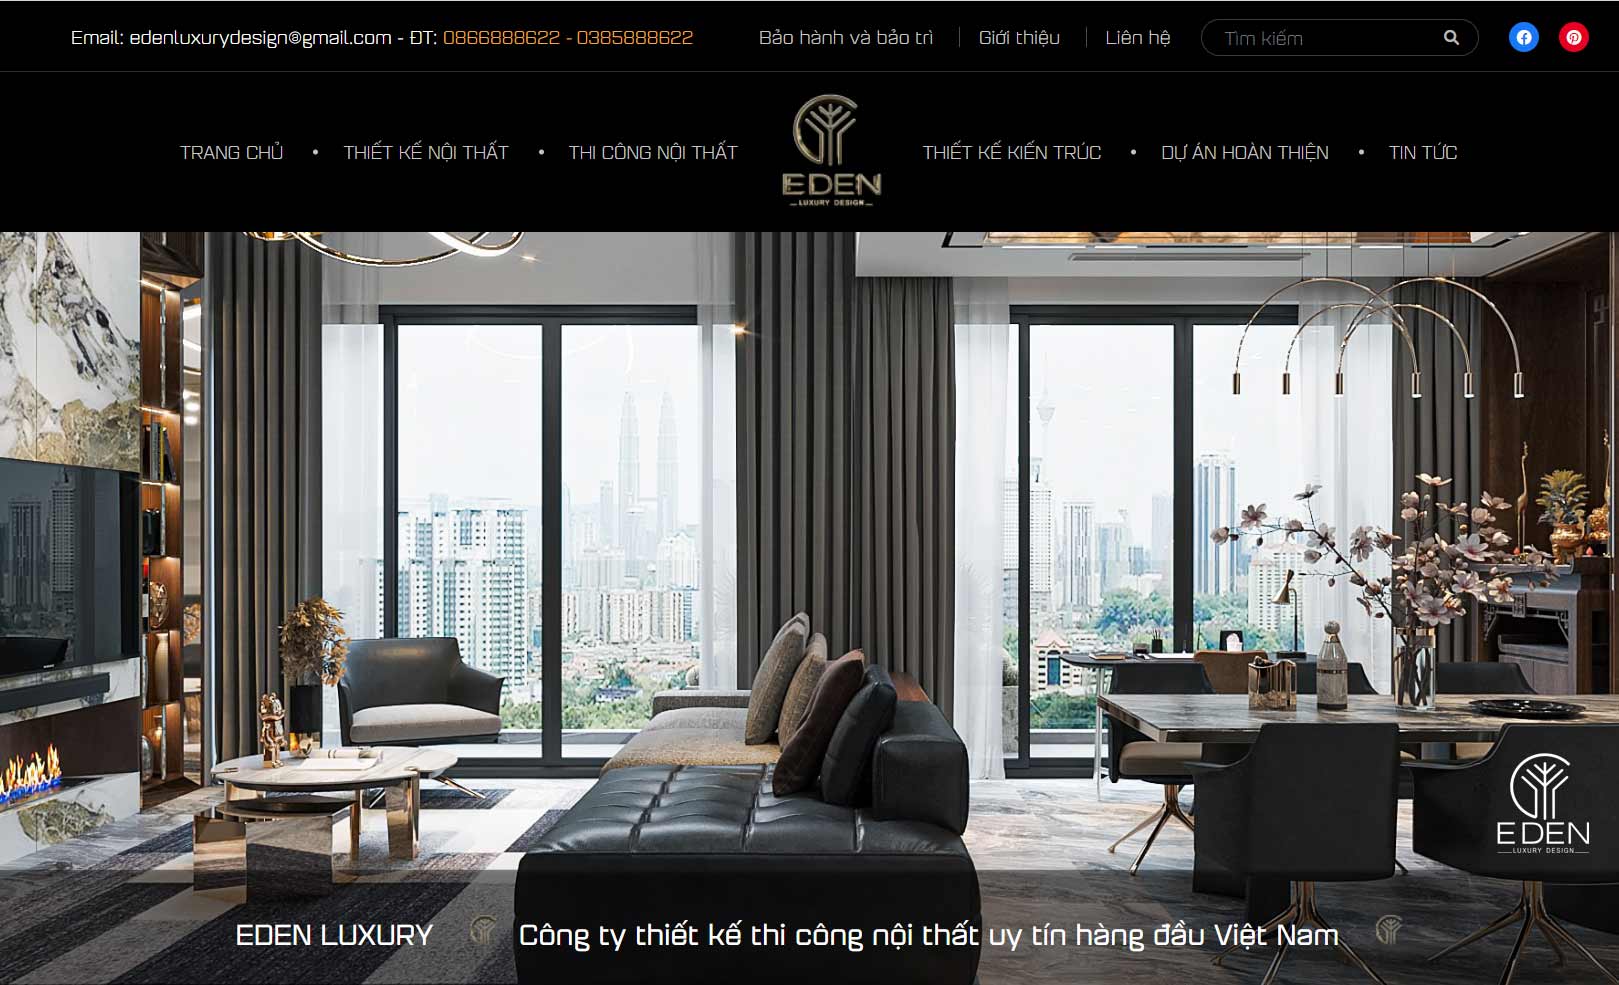 Eden Luxury - Dịch vụ chuyên thiết kế nội thất số 1 Việt Nam